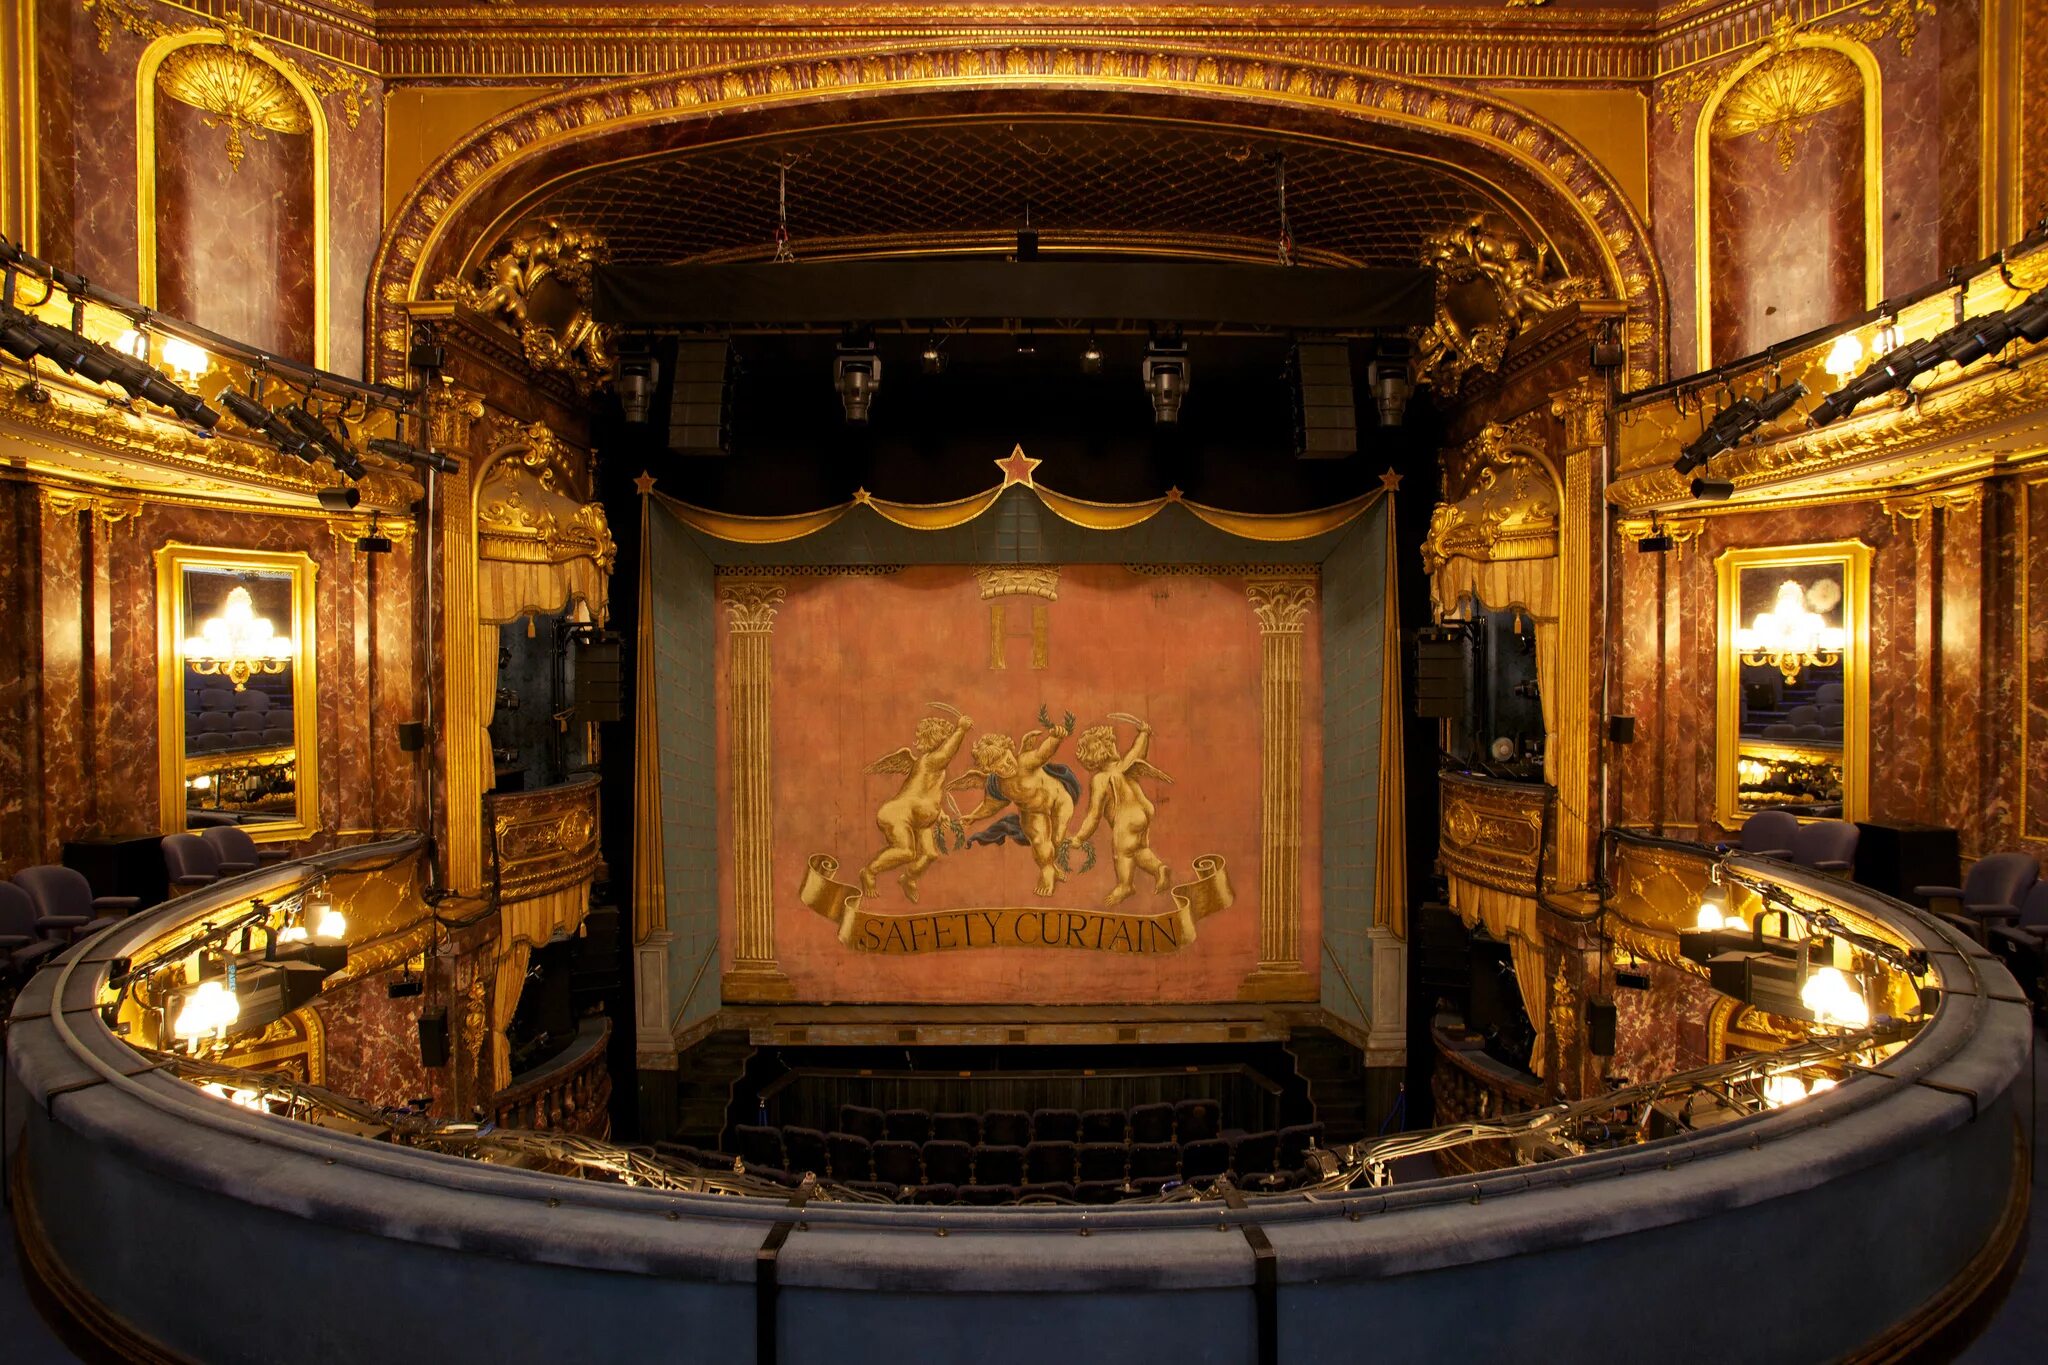 Нижний этаж в театре. Королевский театр Хеймаркет. Роял Хаймаркет театр Лондон. Бат Англия Королевский театр. Королевский театр Вестминстер.